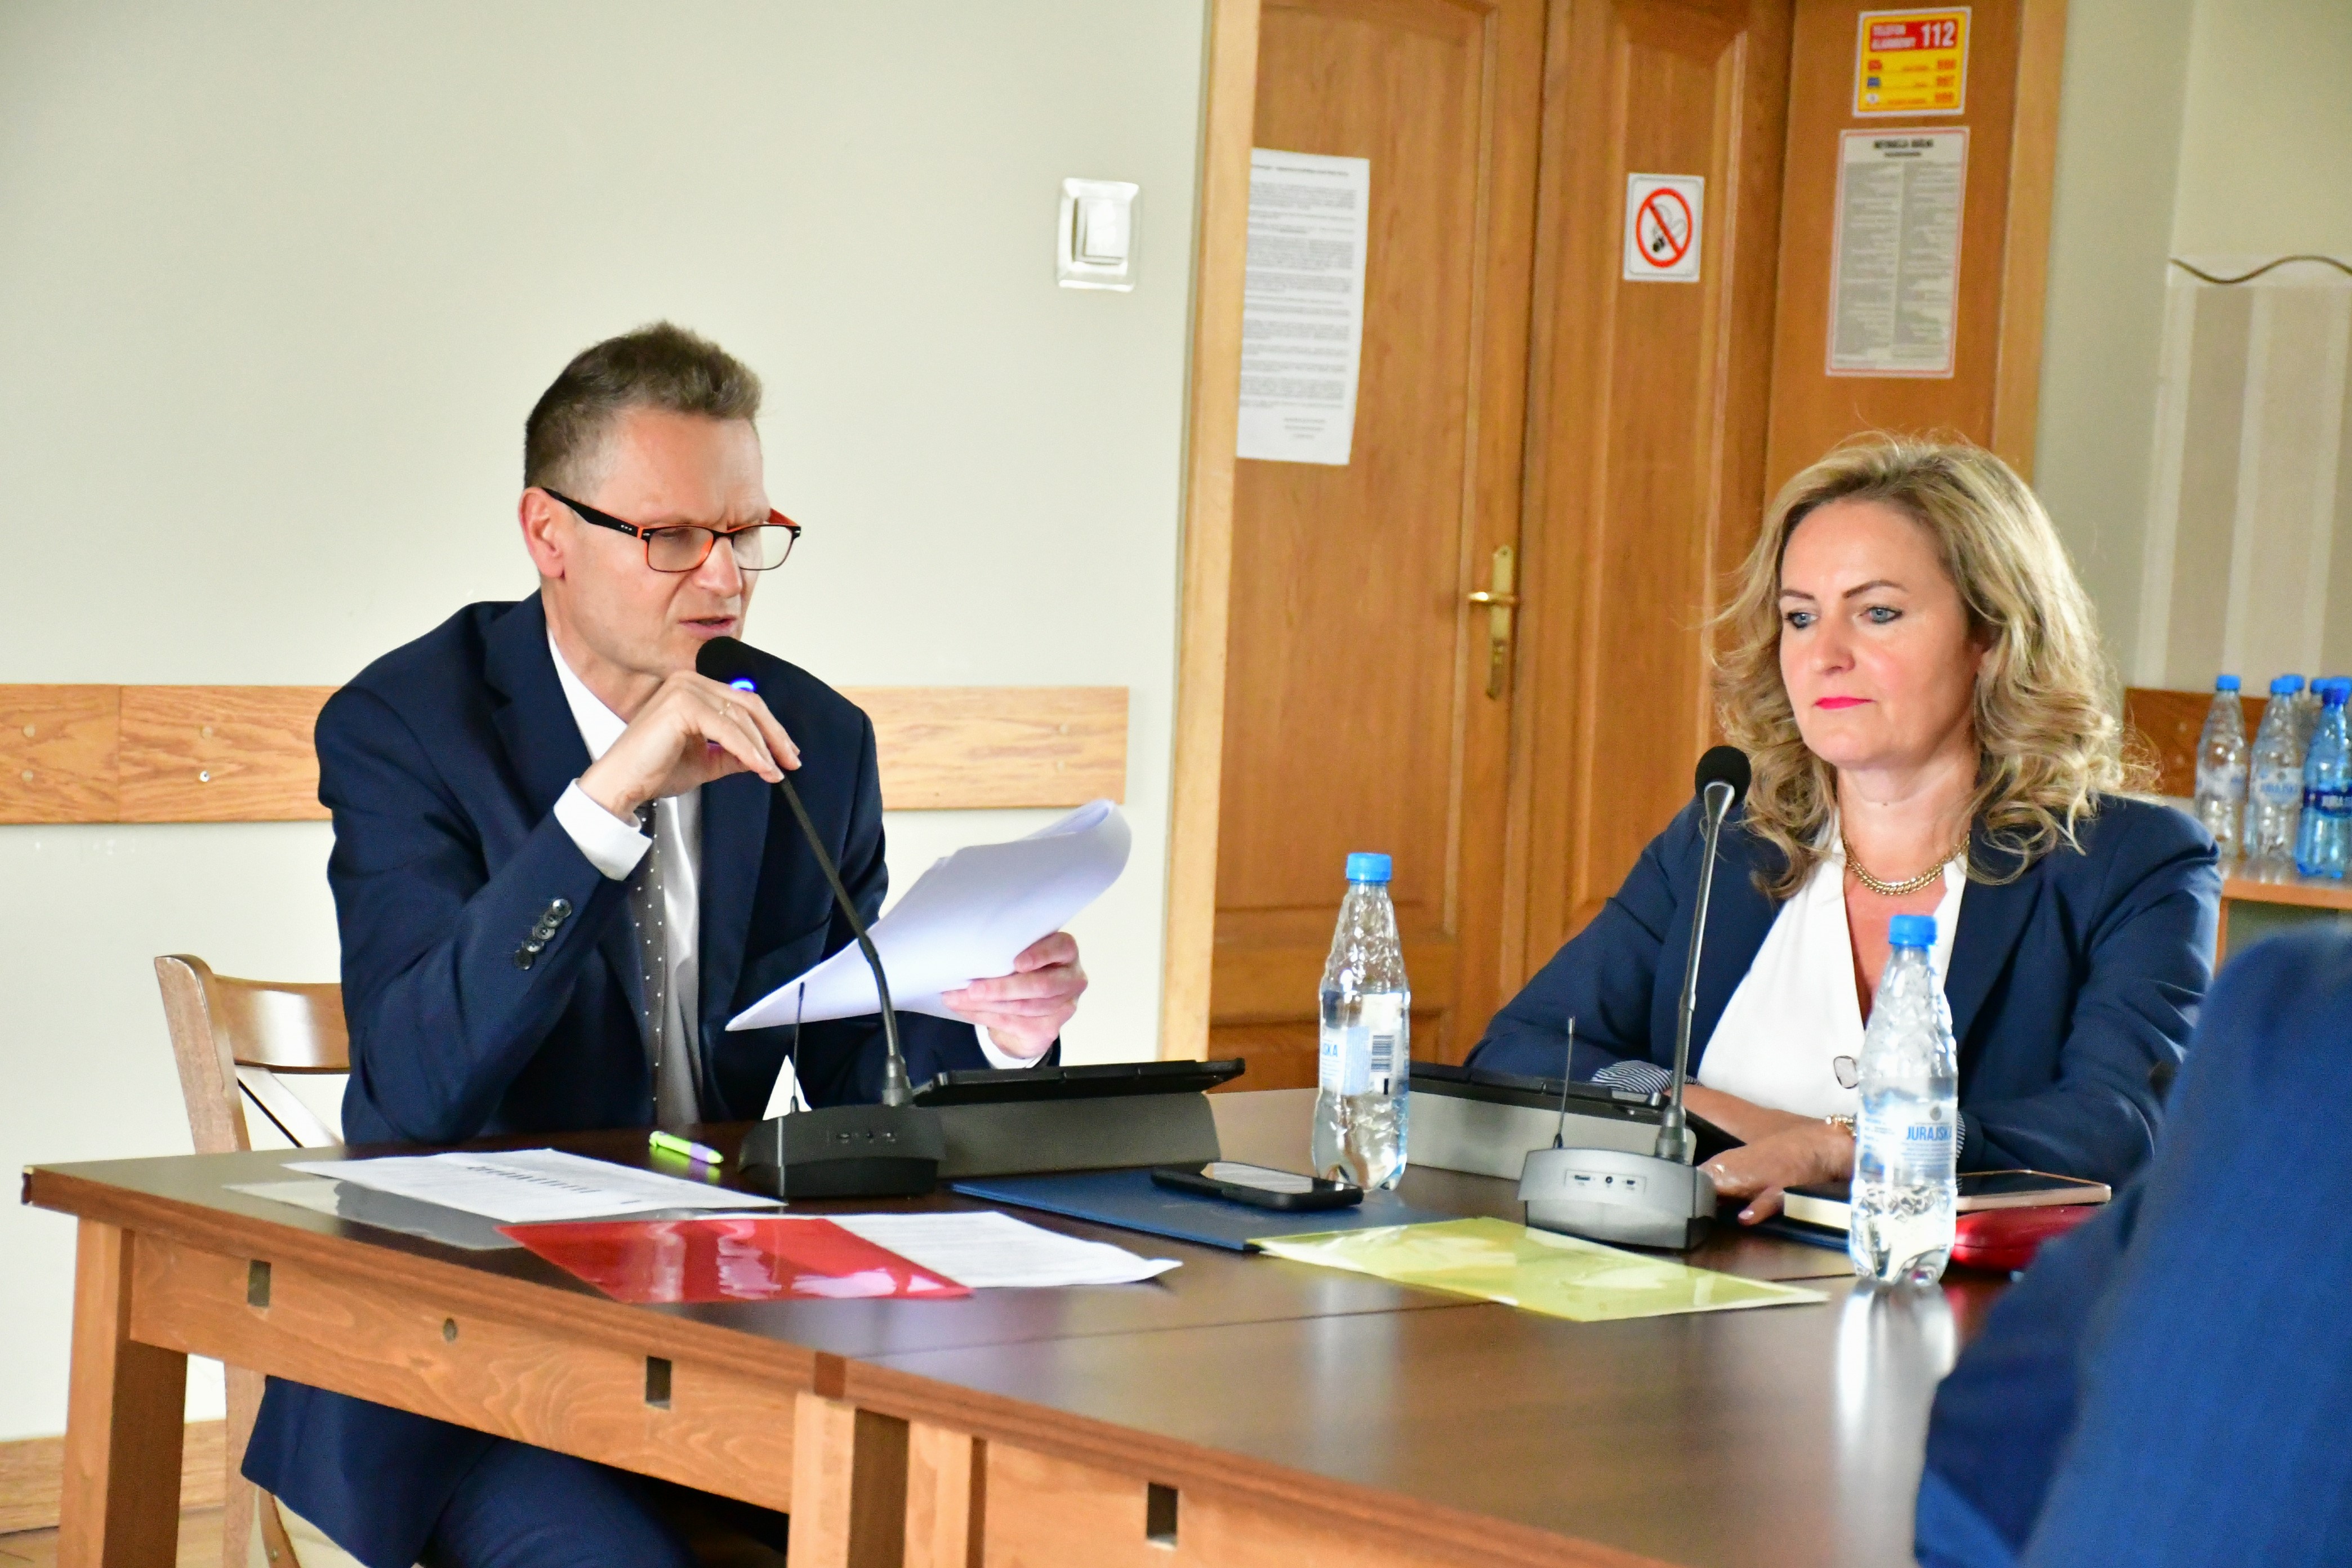 Przewodniczący Rady Gminy Tadeusz Lazarek oraz Izabela Ogierman, wiceprzewodnicząca Rady Gminy